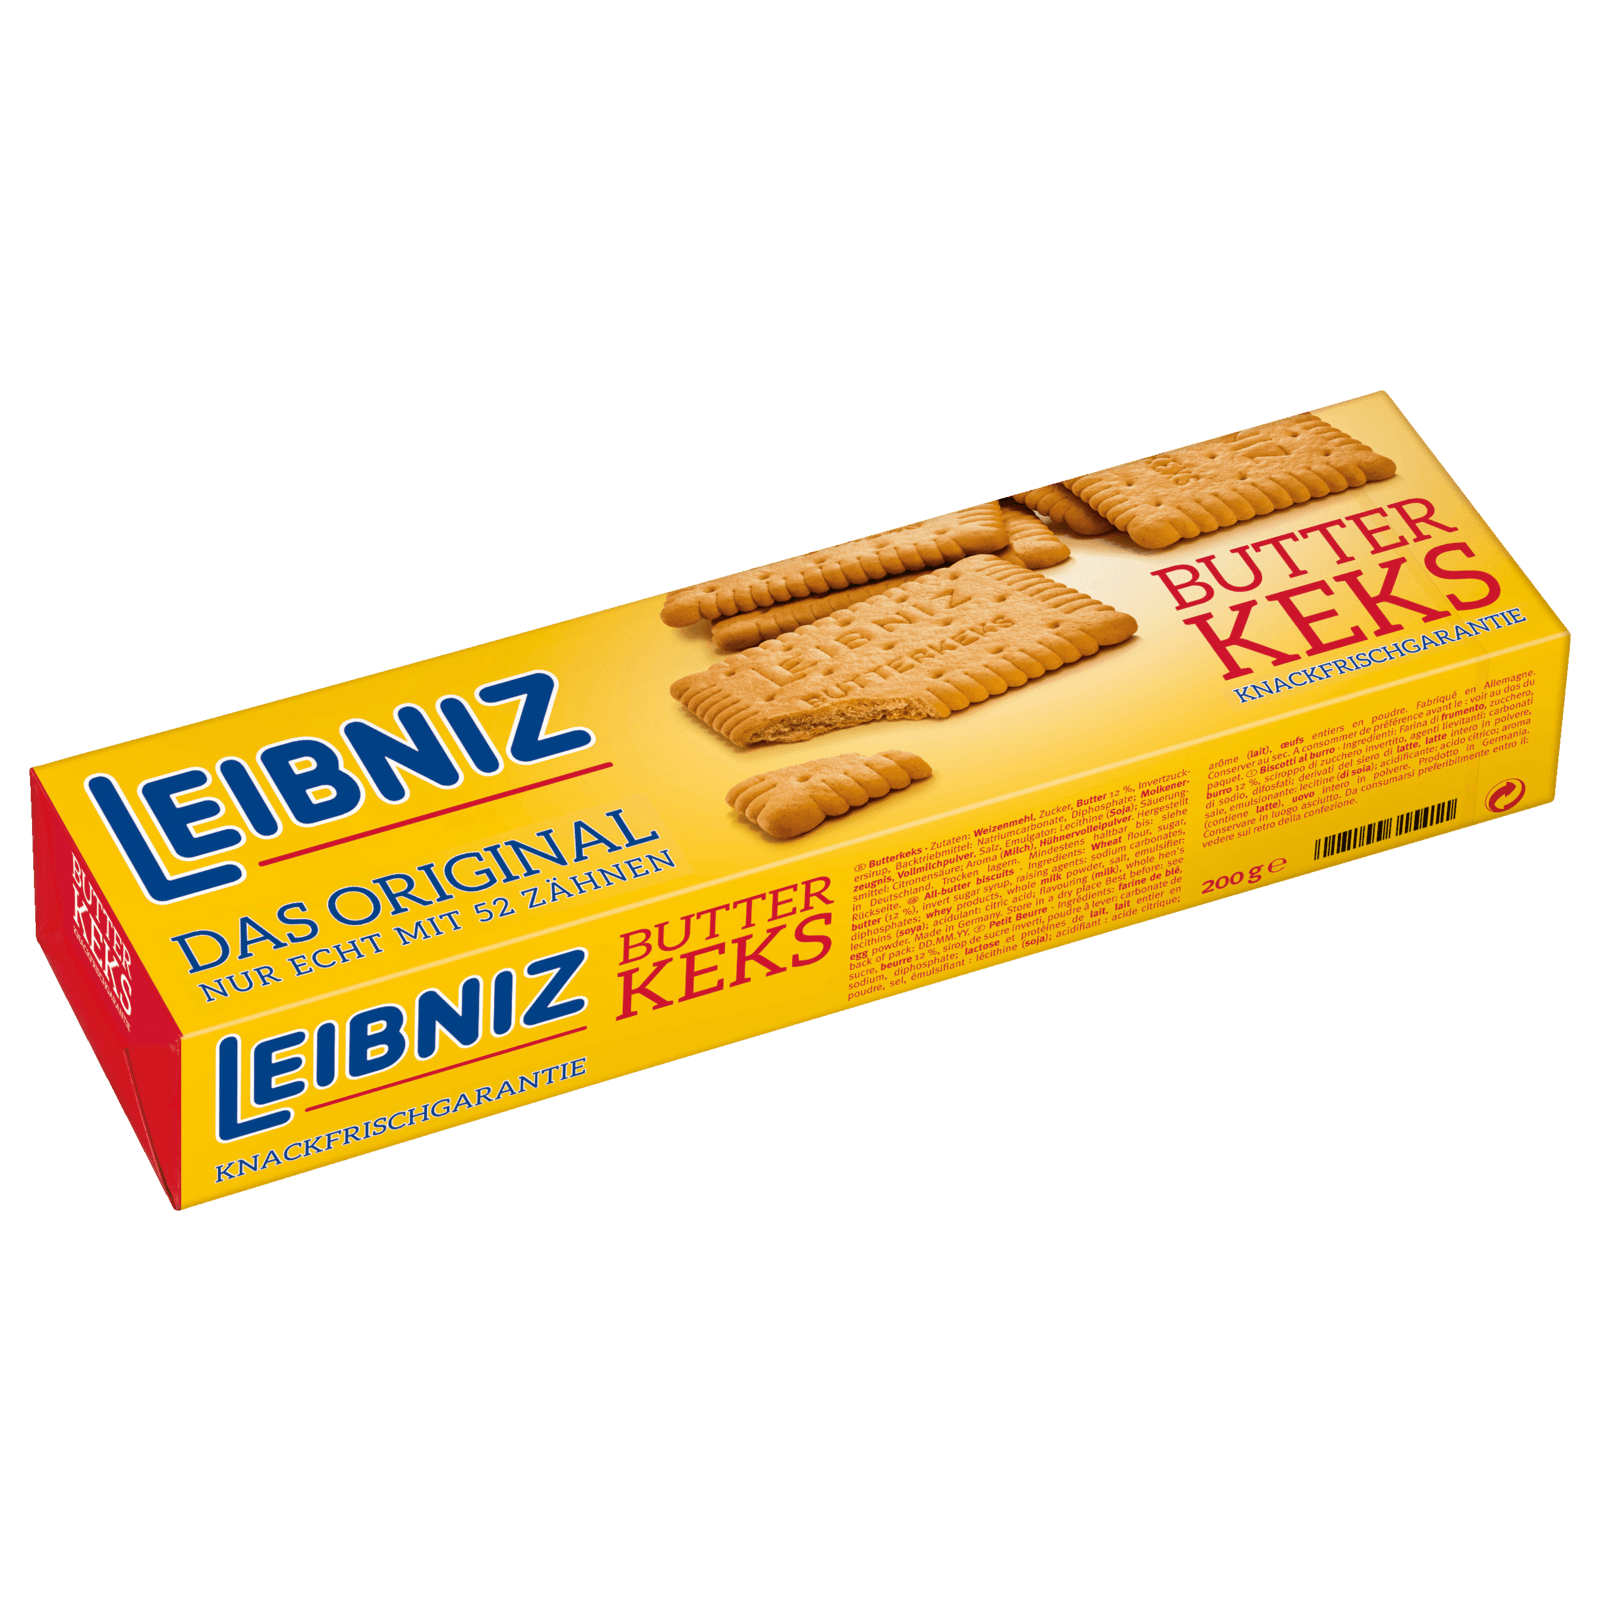 Biscuiti Leibniz unt keks 200g | Kurt German Market